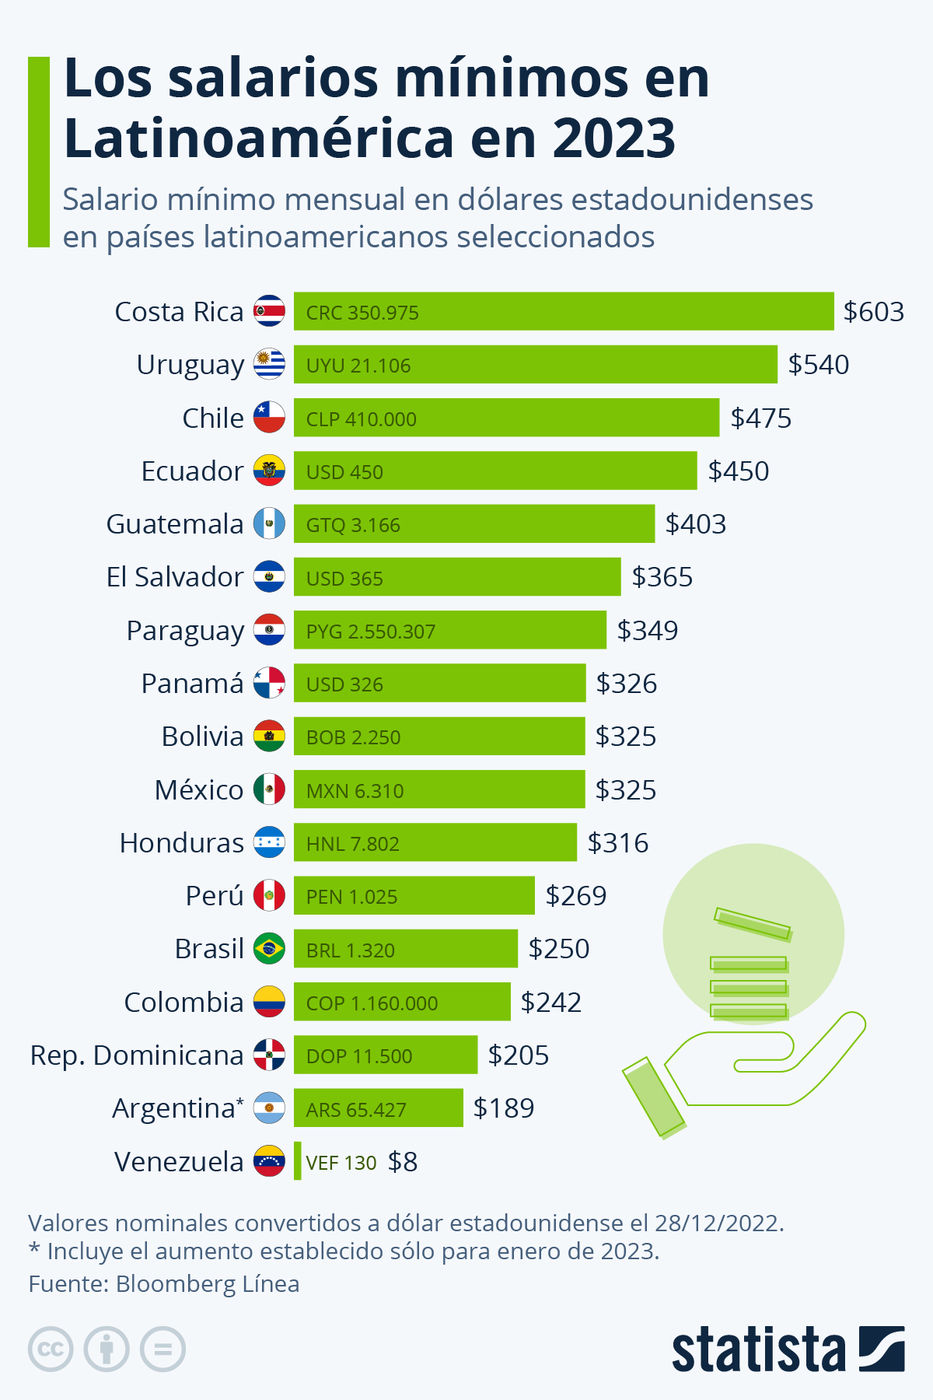 Medido en dólares, Uruguay tiene el segundo salario mínimo más alto de